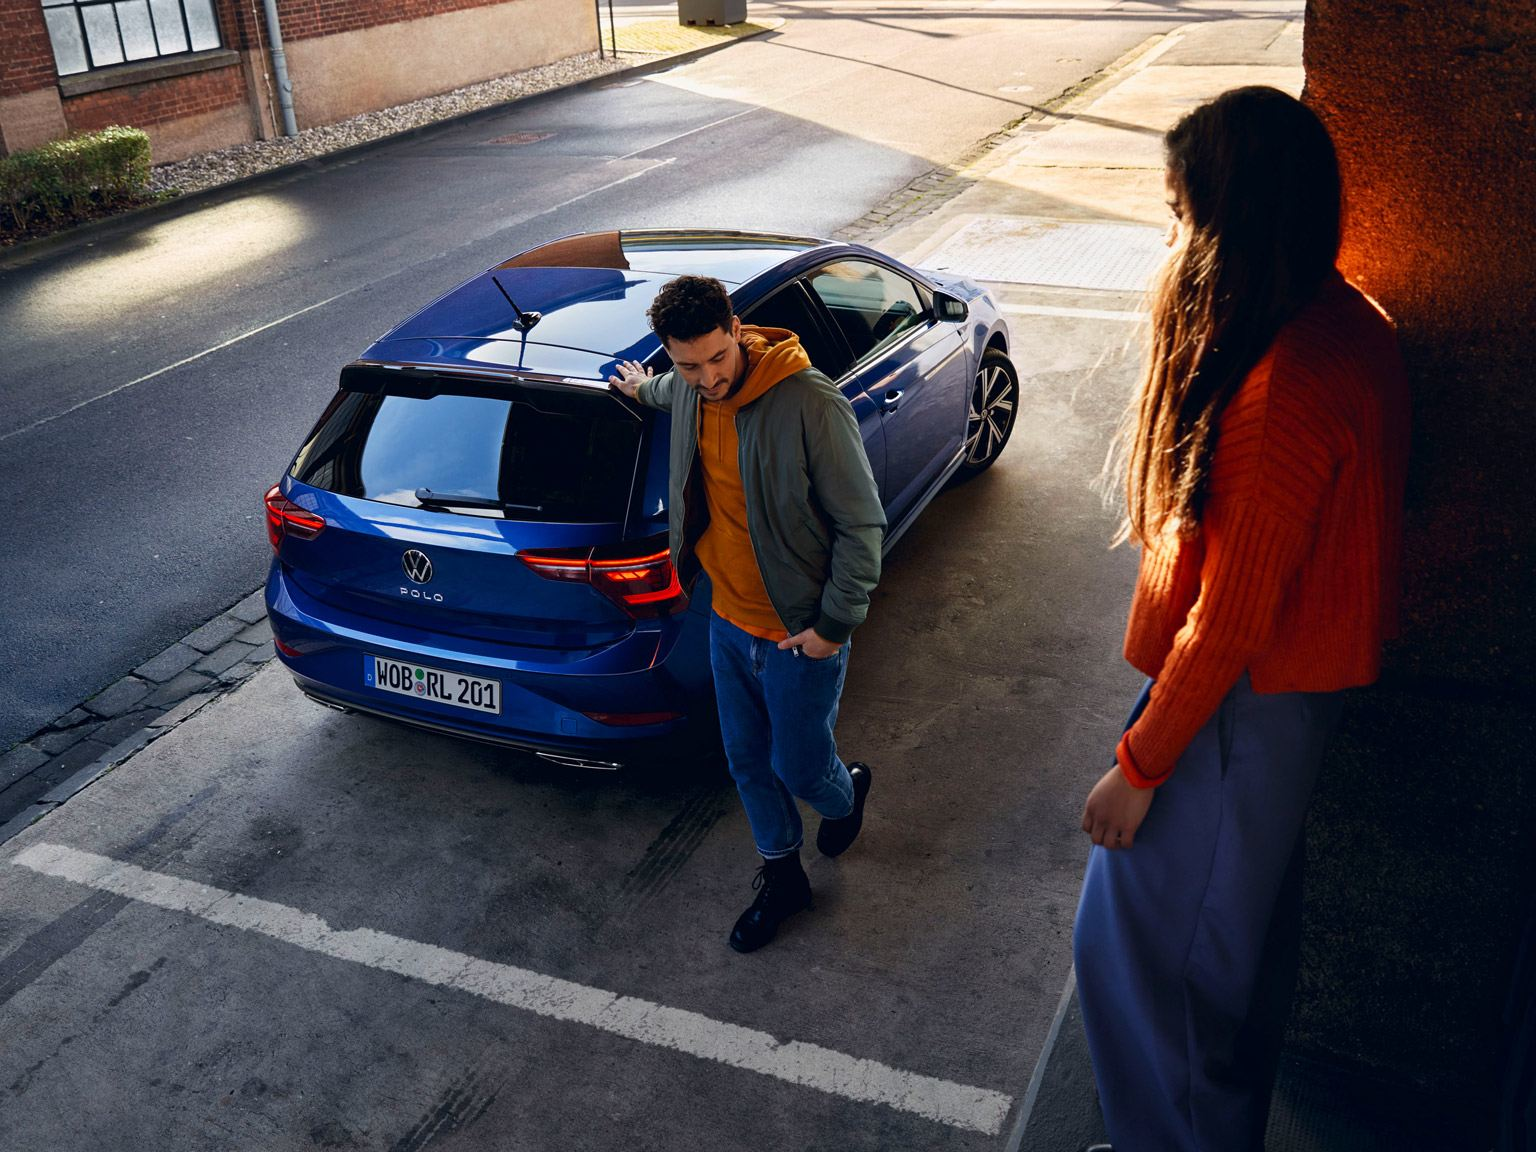 Uomo appoggiato alla Volkswagen Nuova Polo blu